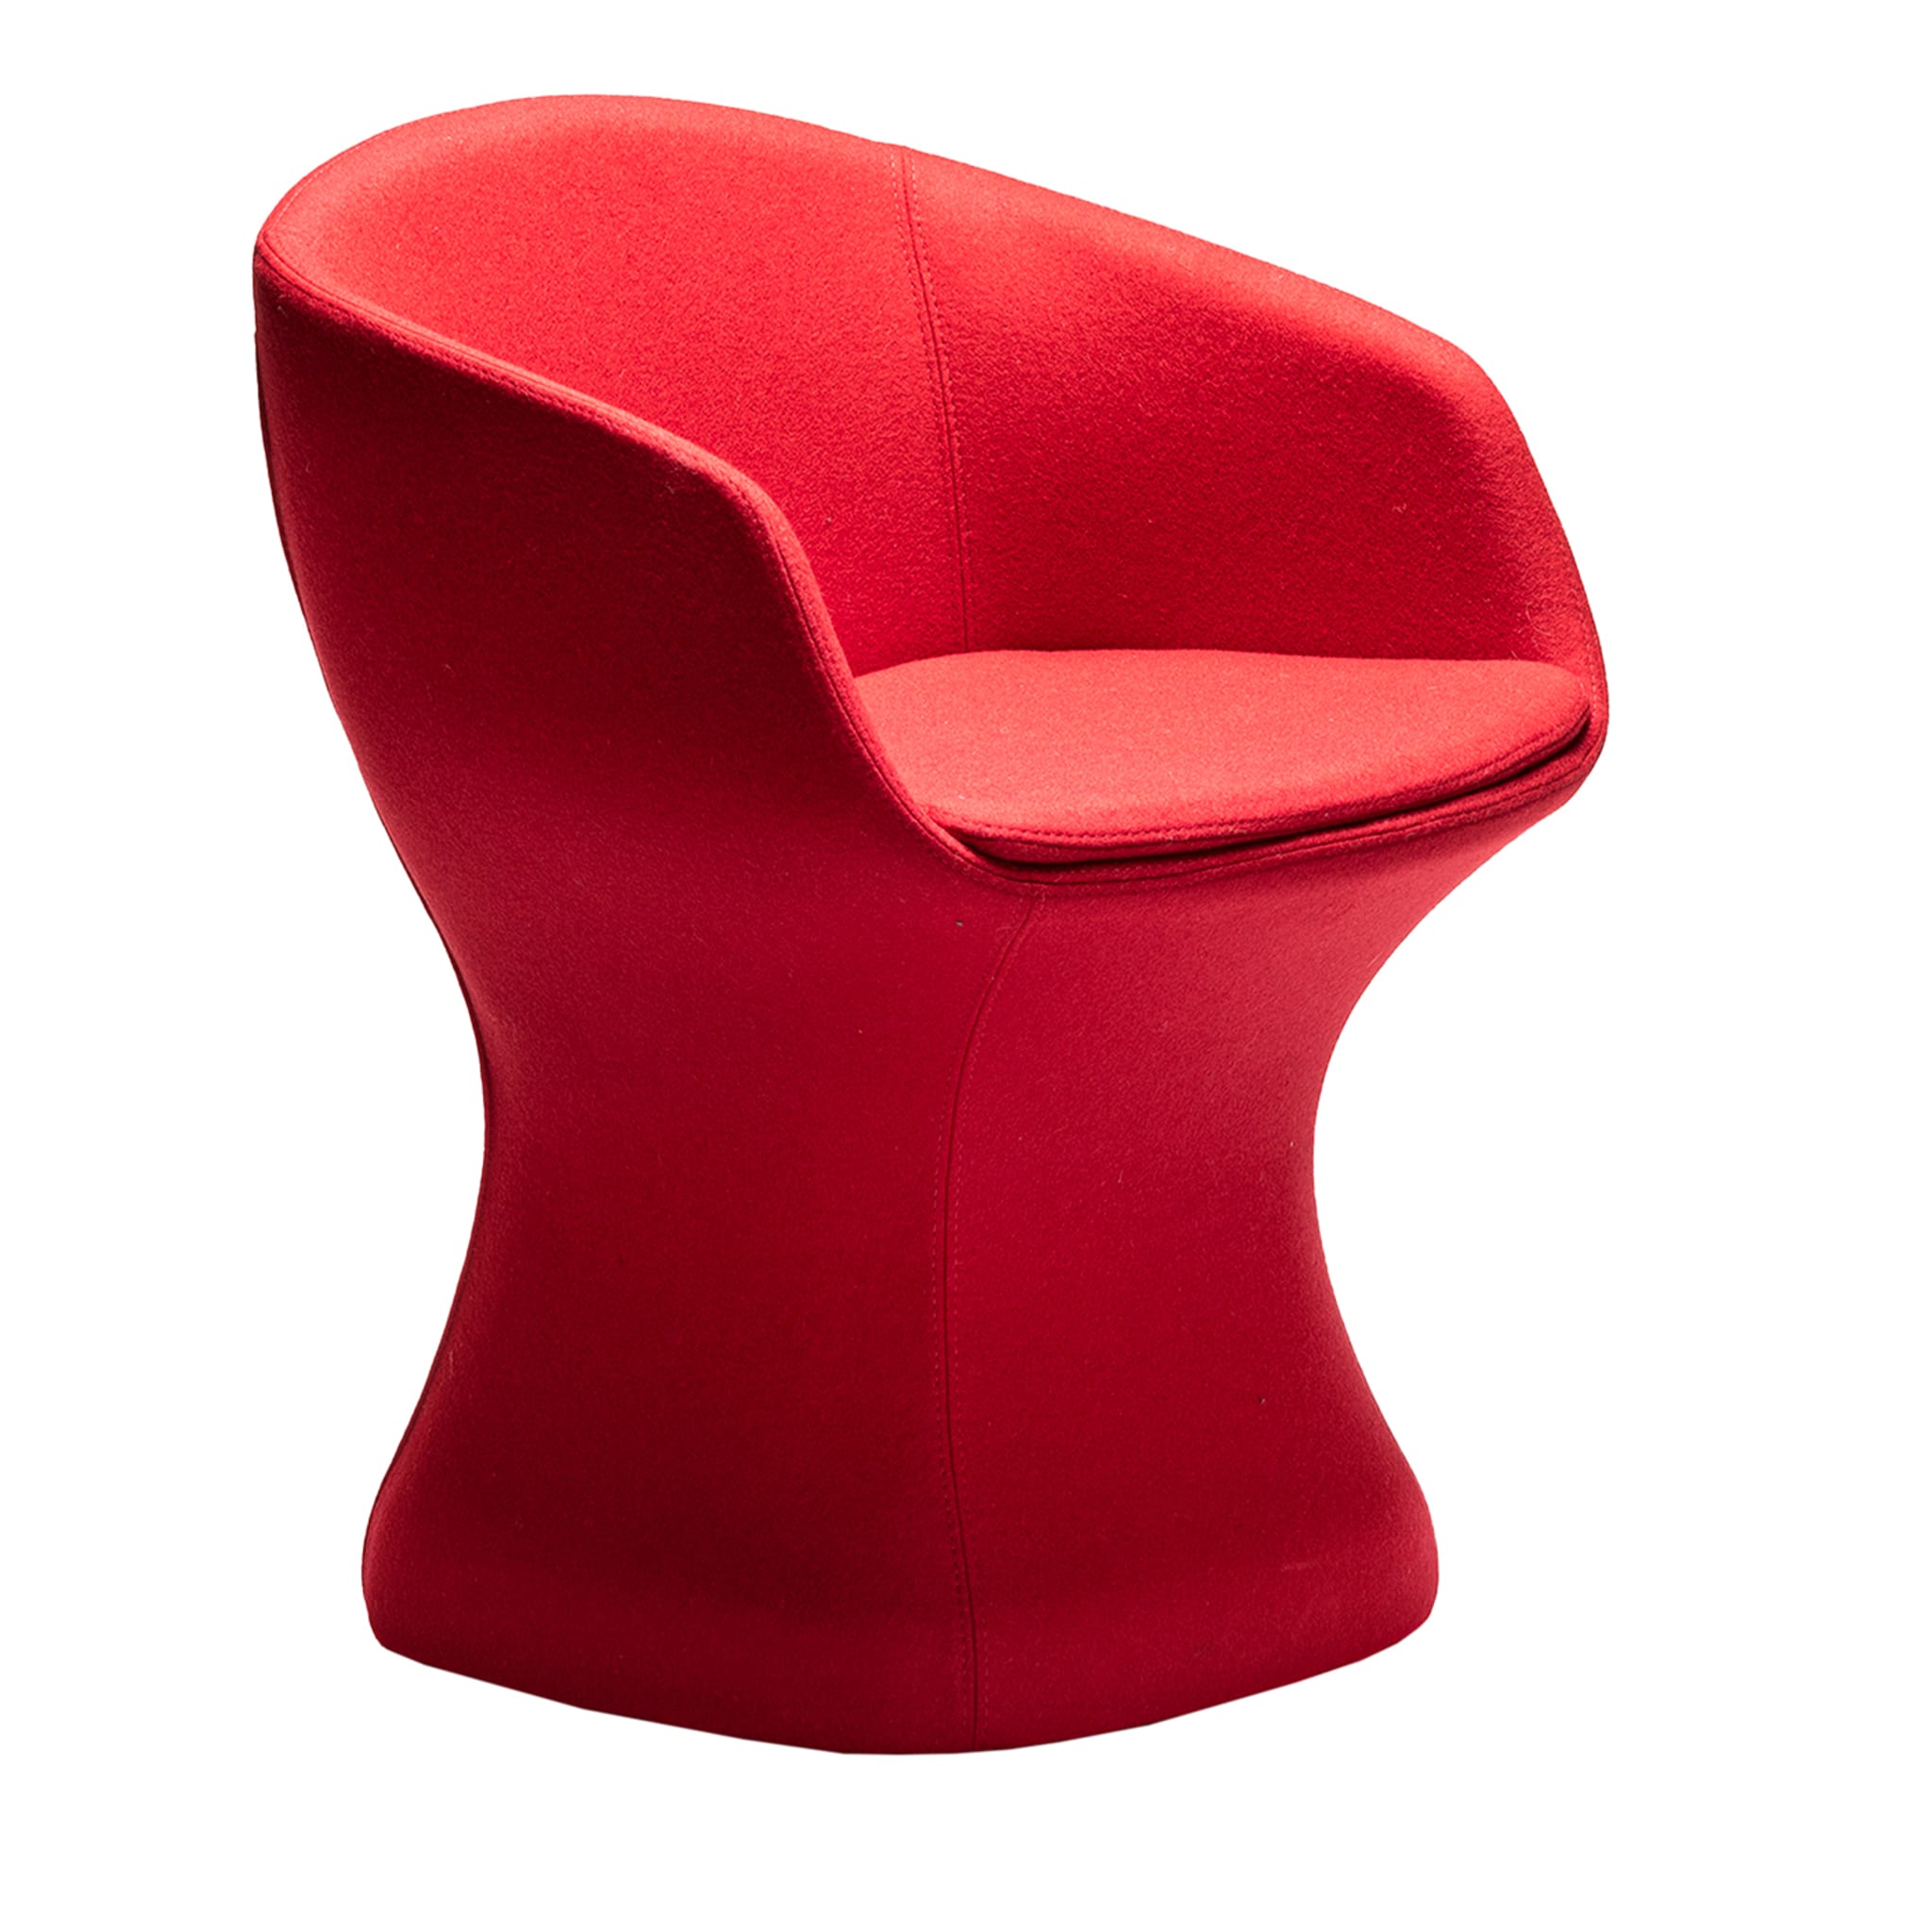 So-Pretty Red Armchair by Dario Deplin - Vue principale